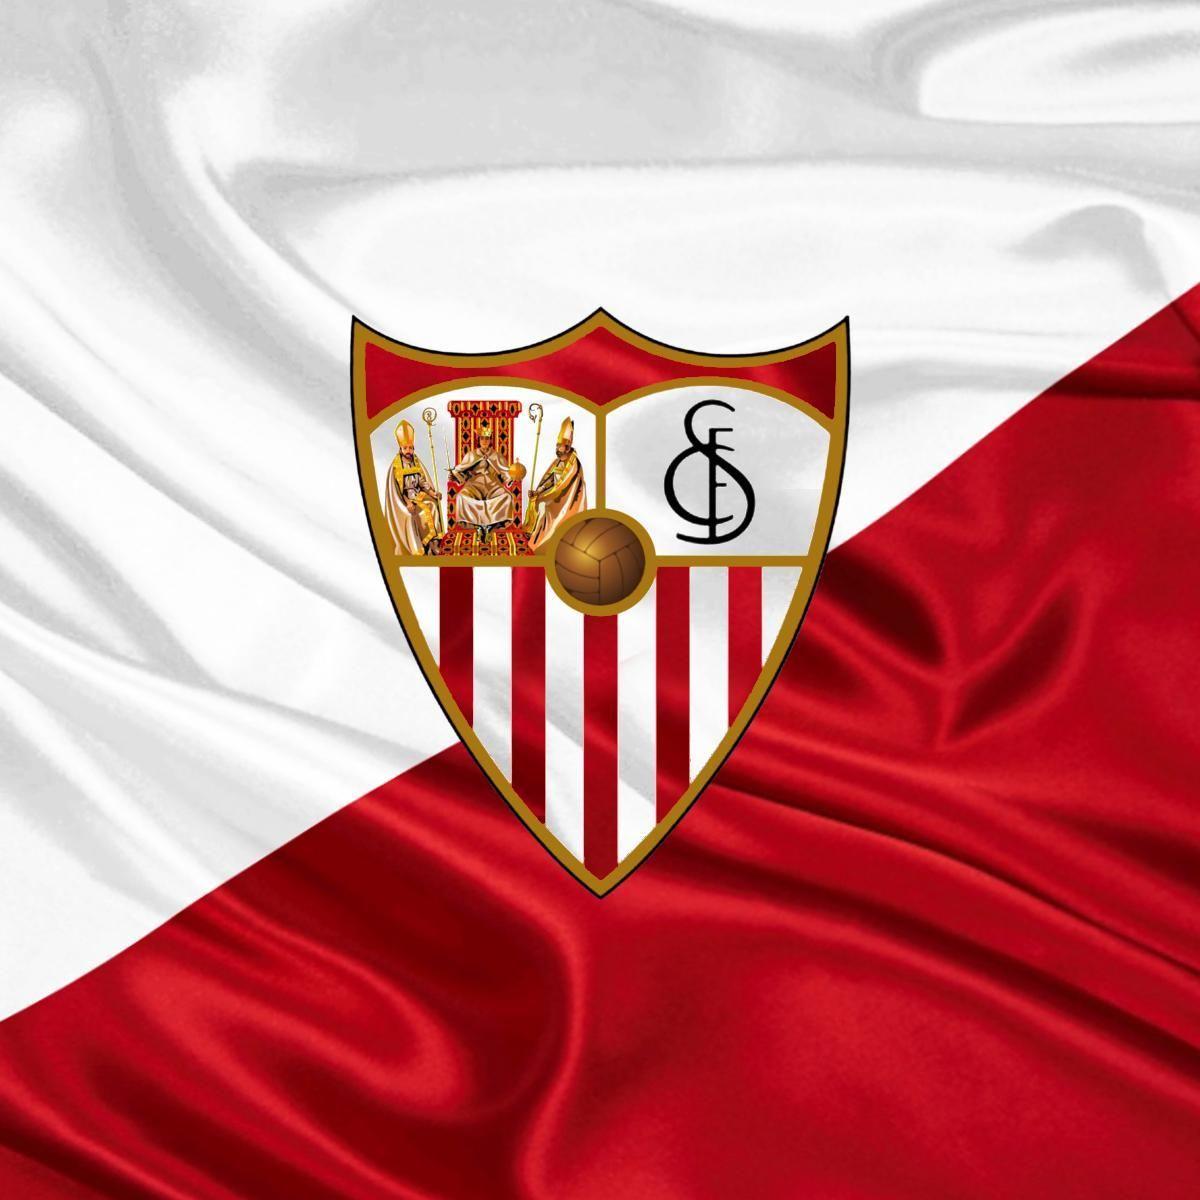 Sevilla Fútbol Club (@SevillaFC) / X